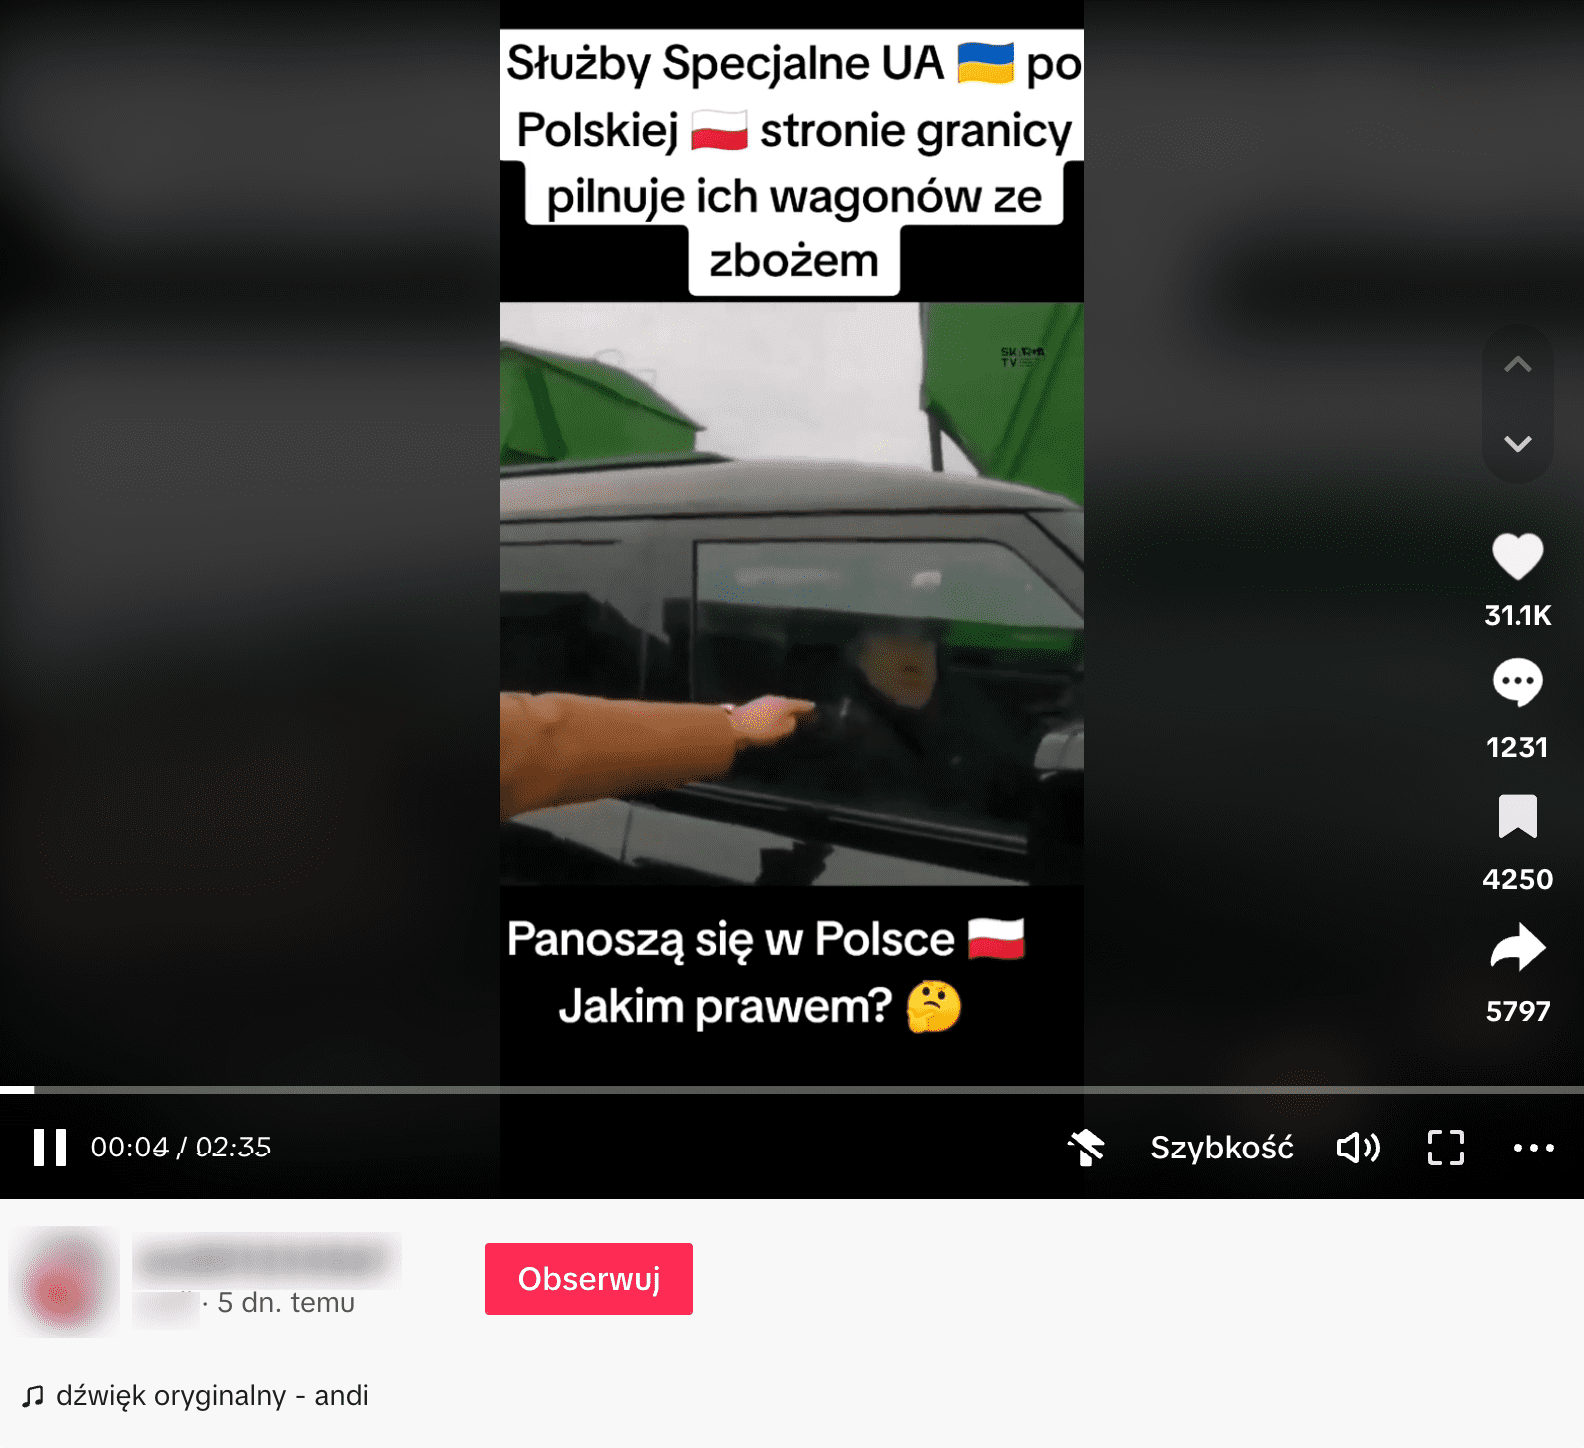 Zrzut ekranu z nagrania na TikToku. Poseł Ryszard Wilk wskazuje ręką na mężczyznę siedzącego w samochodzie, który ma być członkiem ukraińskich sił specjalnych. Wideo uzyskało 31 tys. polubień oraz 5 783 udostępnienia.